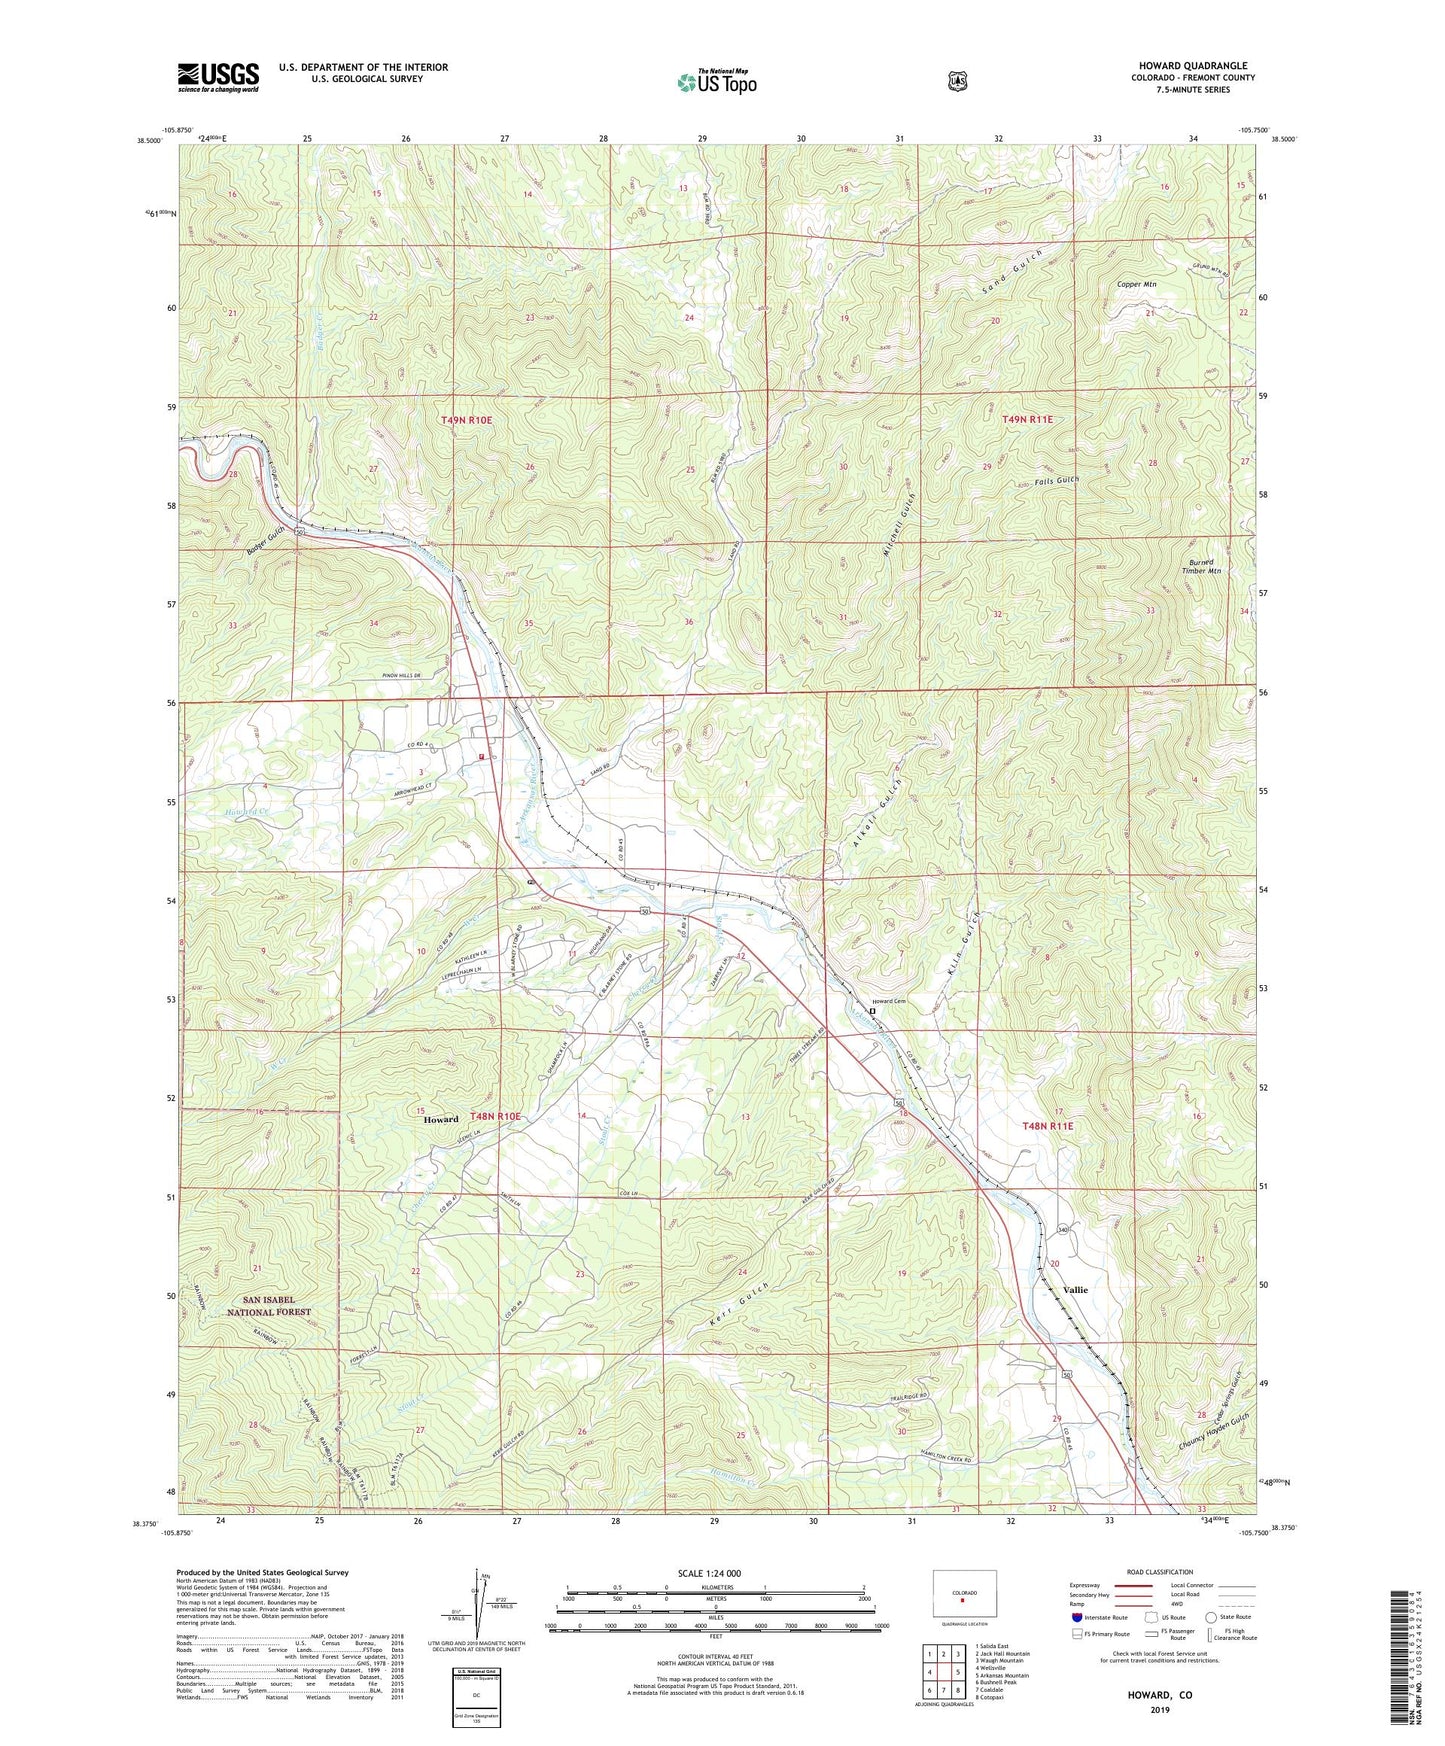 Howard Colorado US Topo Map Image